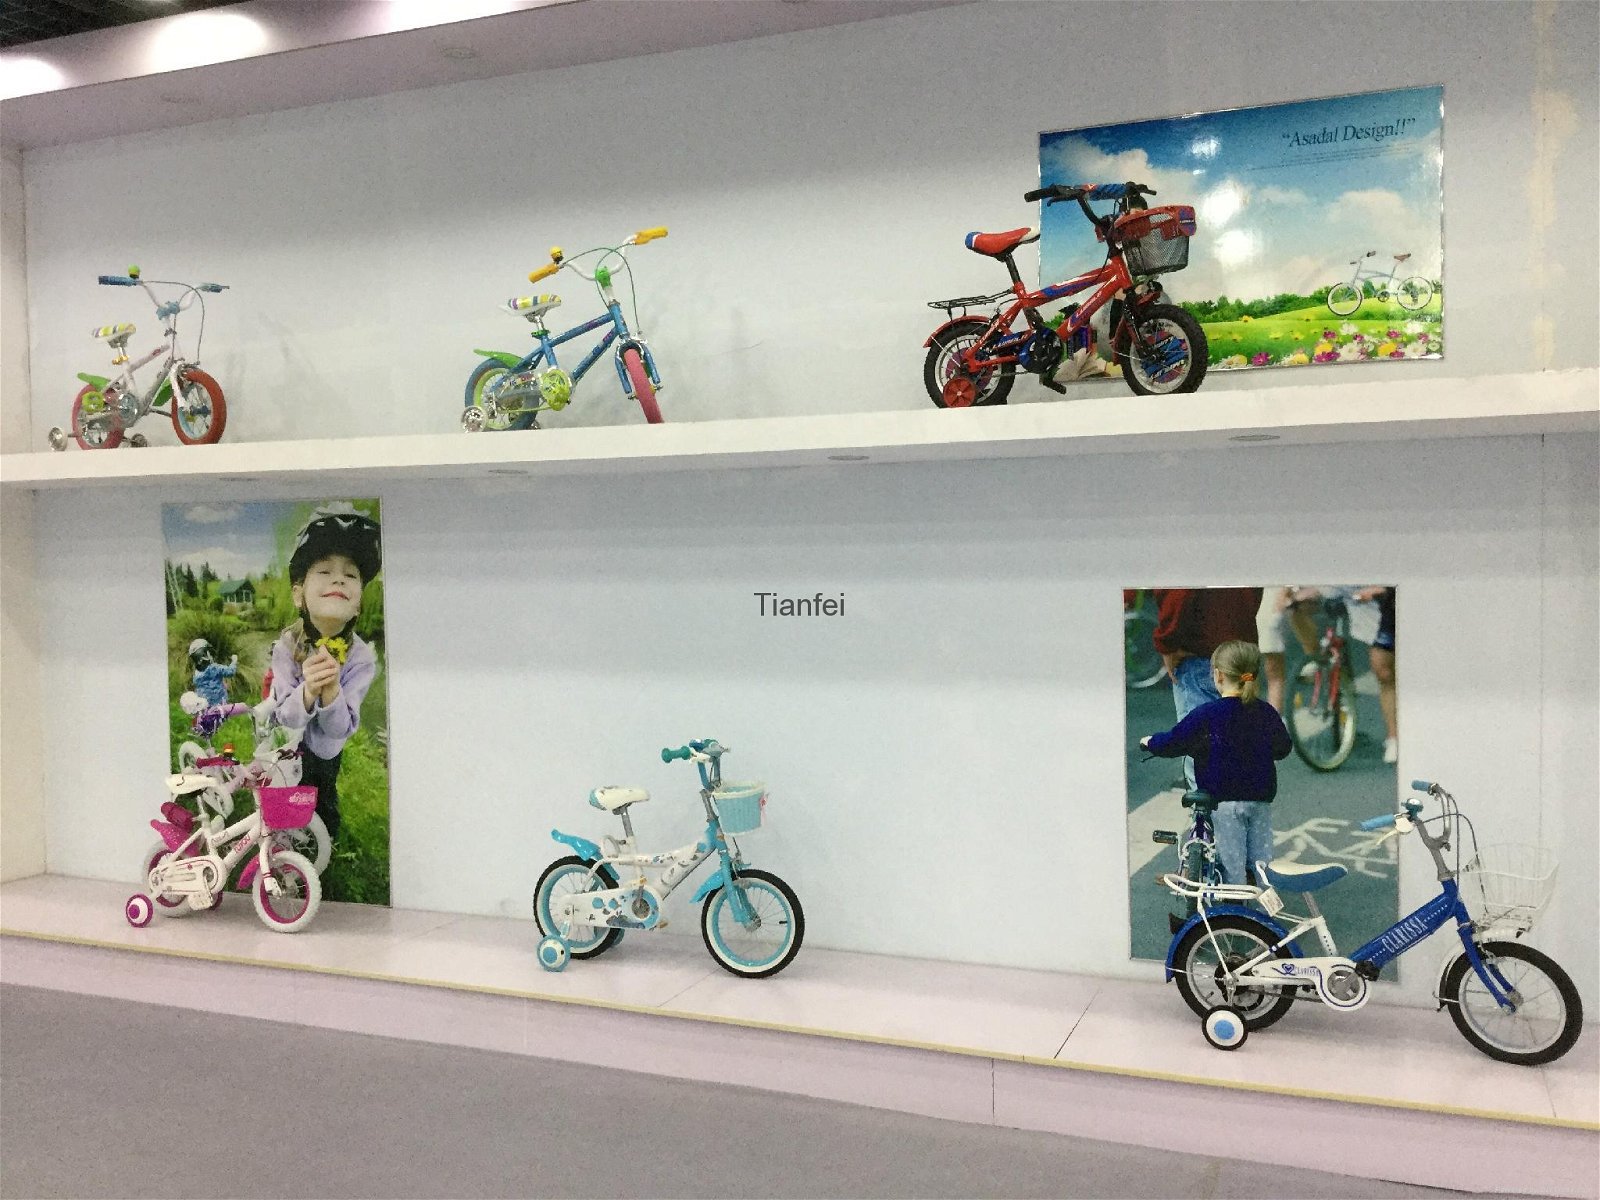 Tianfei Bicycle 4